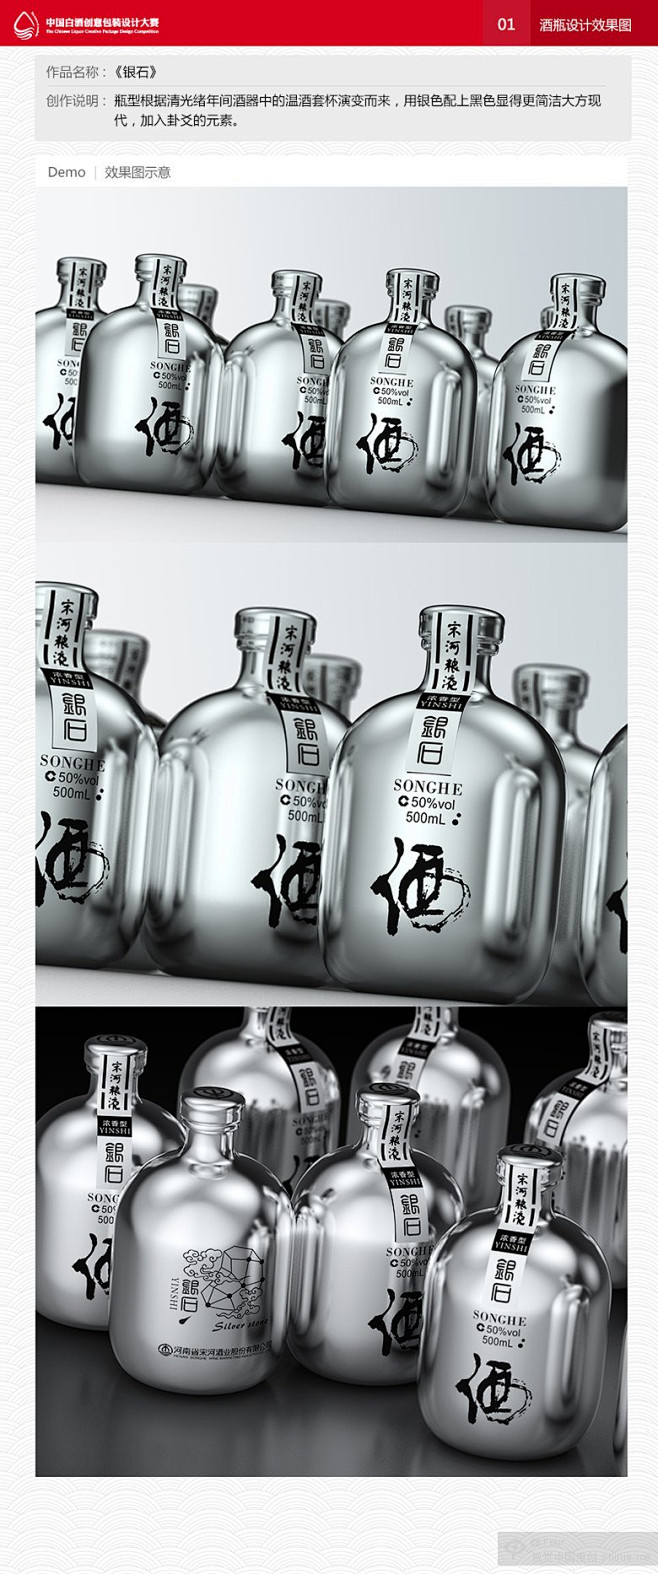 银石-设计大赛-中国白酒创意包装设计大赛...